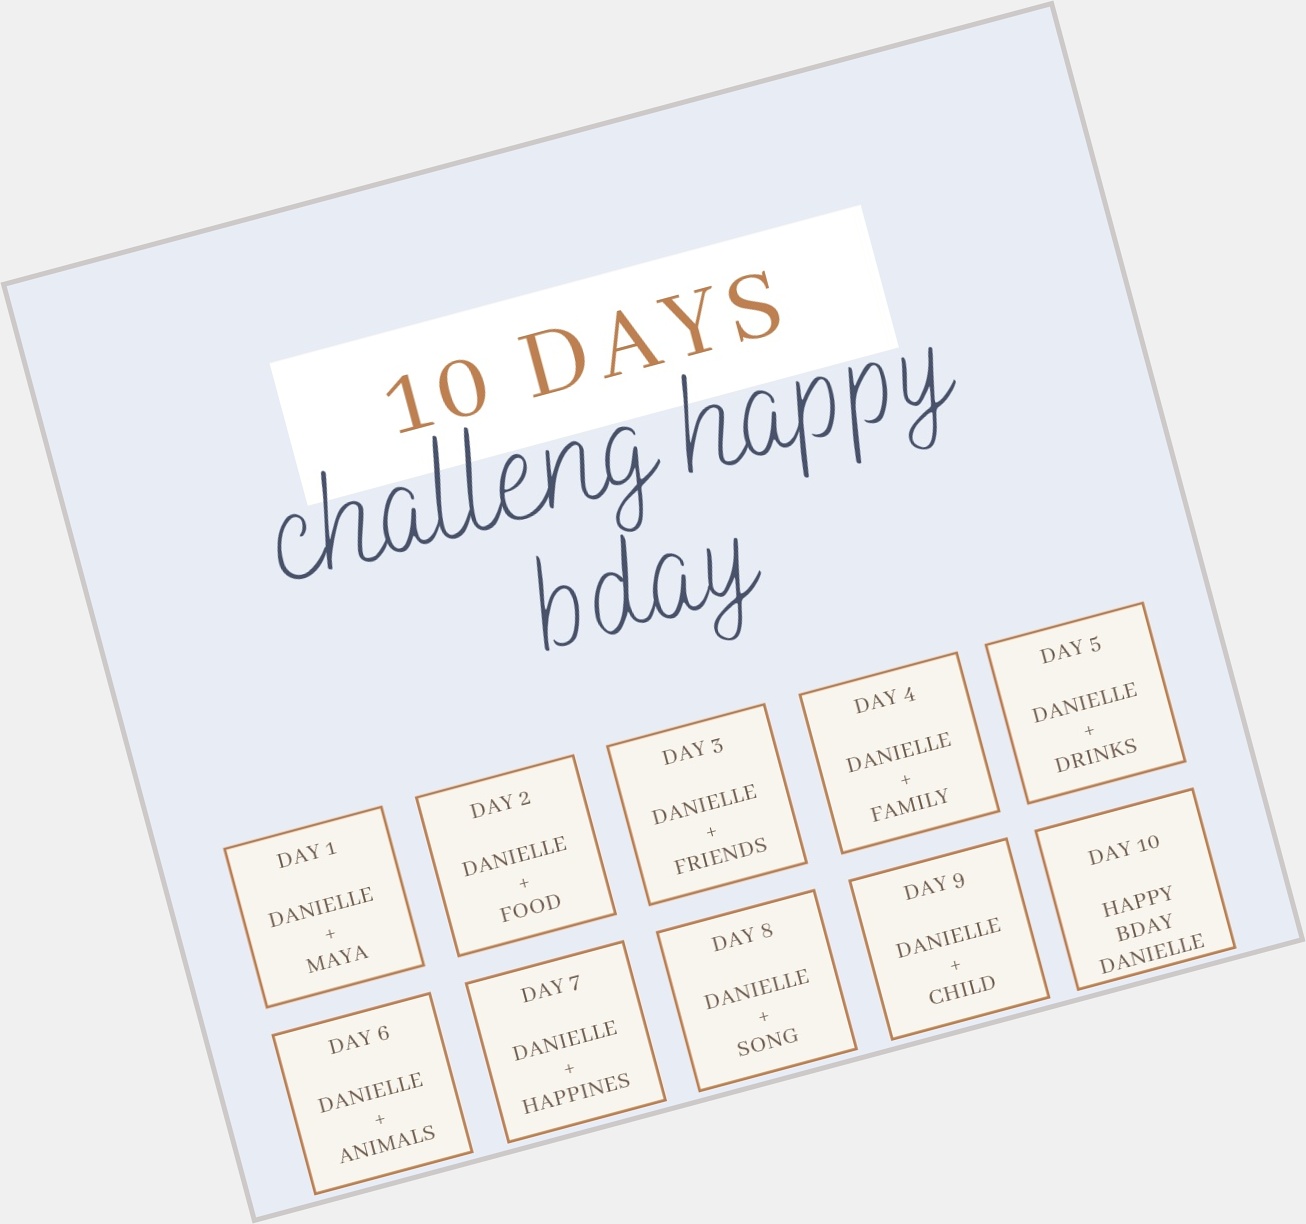 10 days challenge happy bday, danielle savre: 